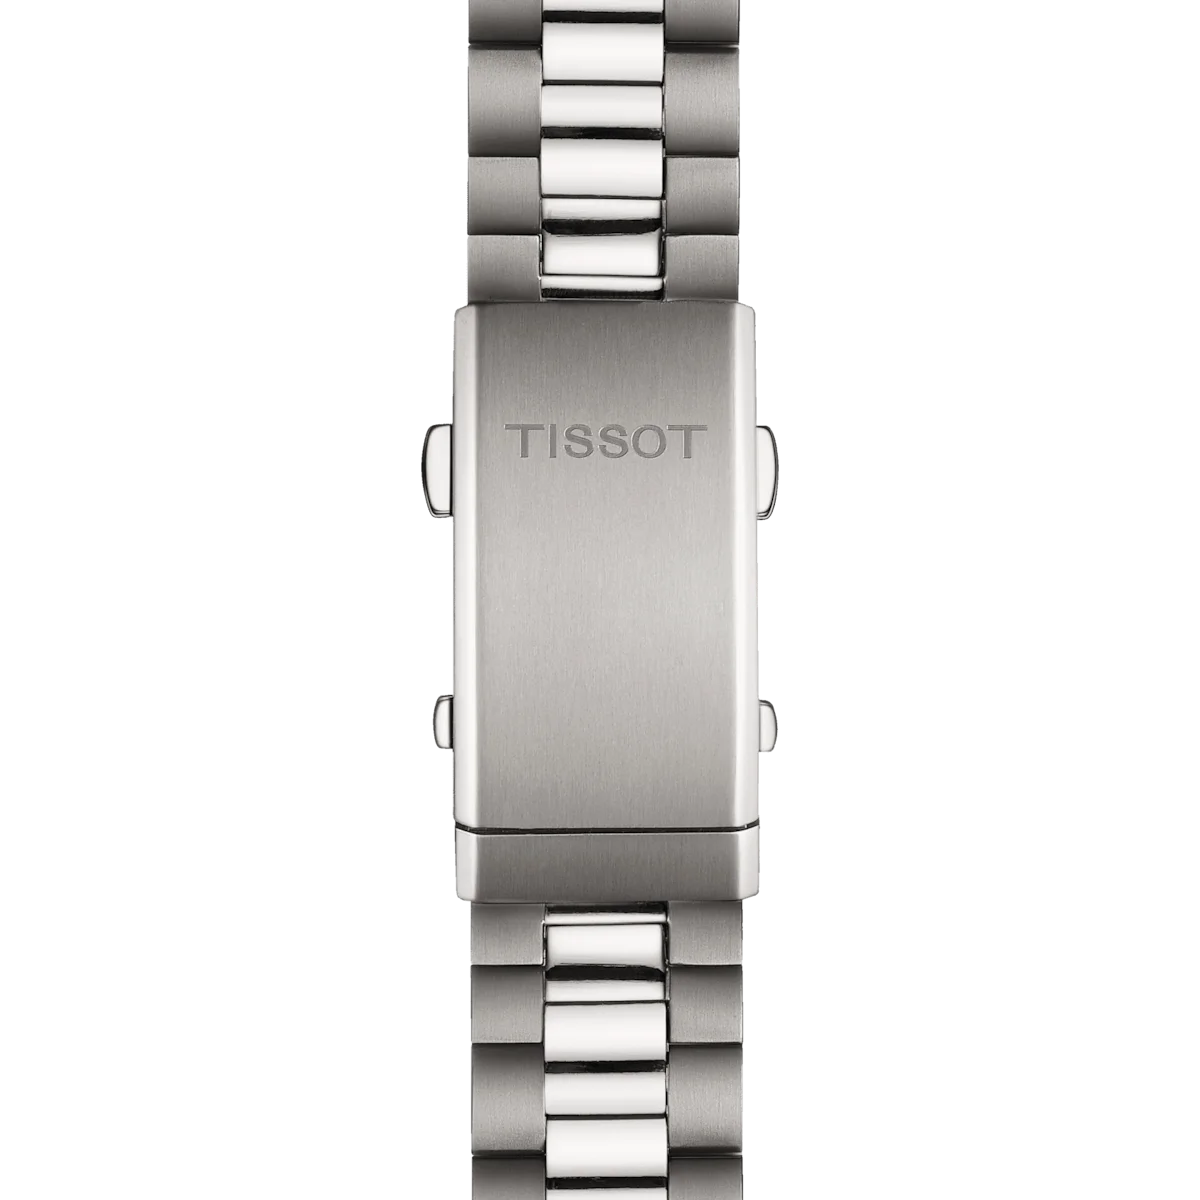 Tissot T-Touch Connect Sport Unisex Titaniumuhren - T153.420.44.051.00